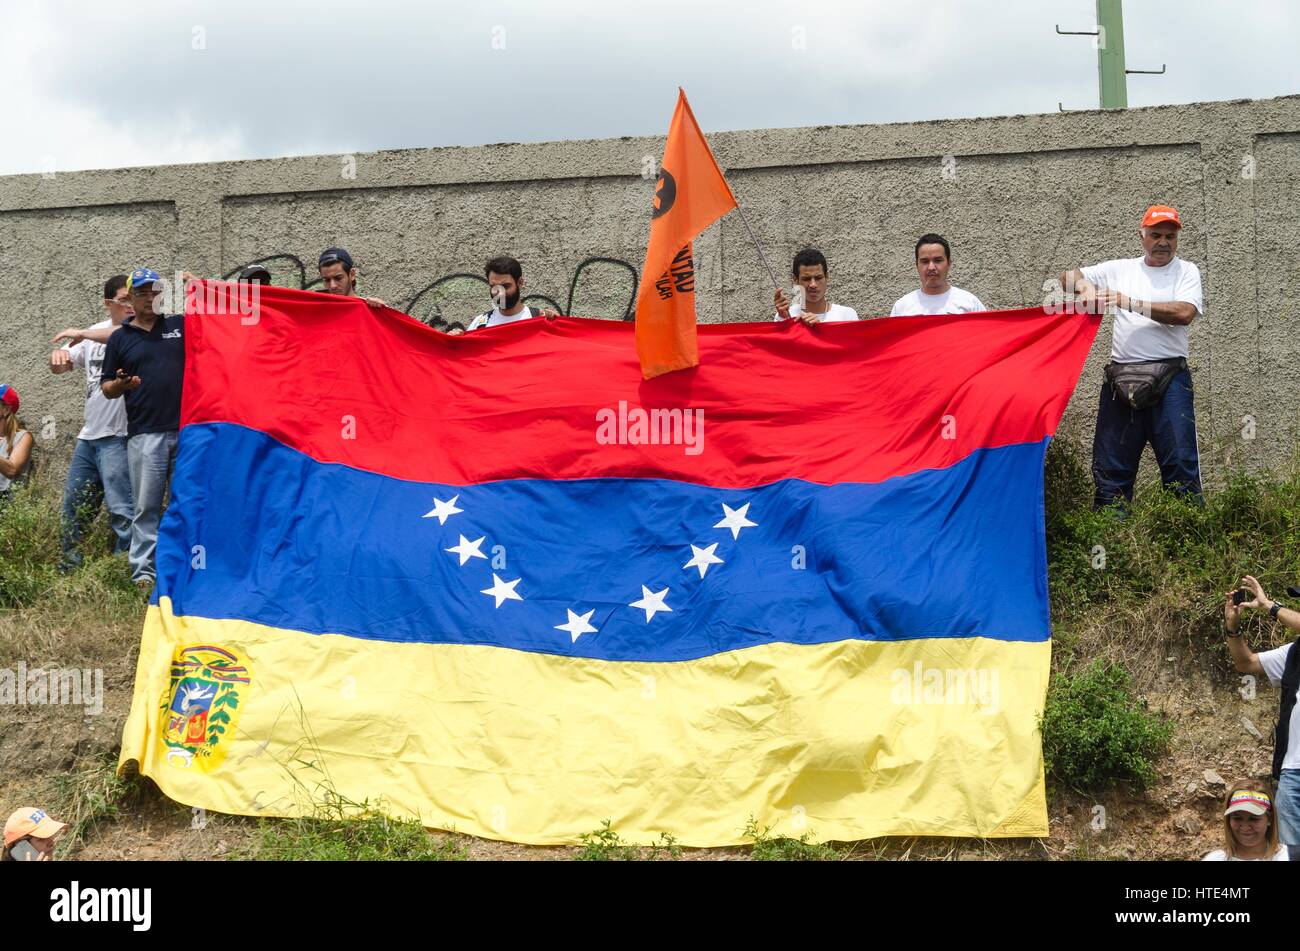 Un grupo de opositores al gobierno venezolano, sostiene una bandera de Venezuela en retroceso, como una solicitud de emergencia internacional. Foto de stock